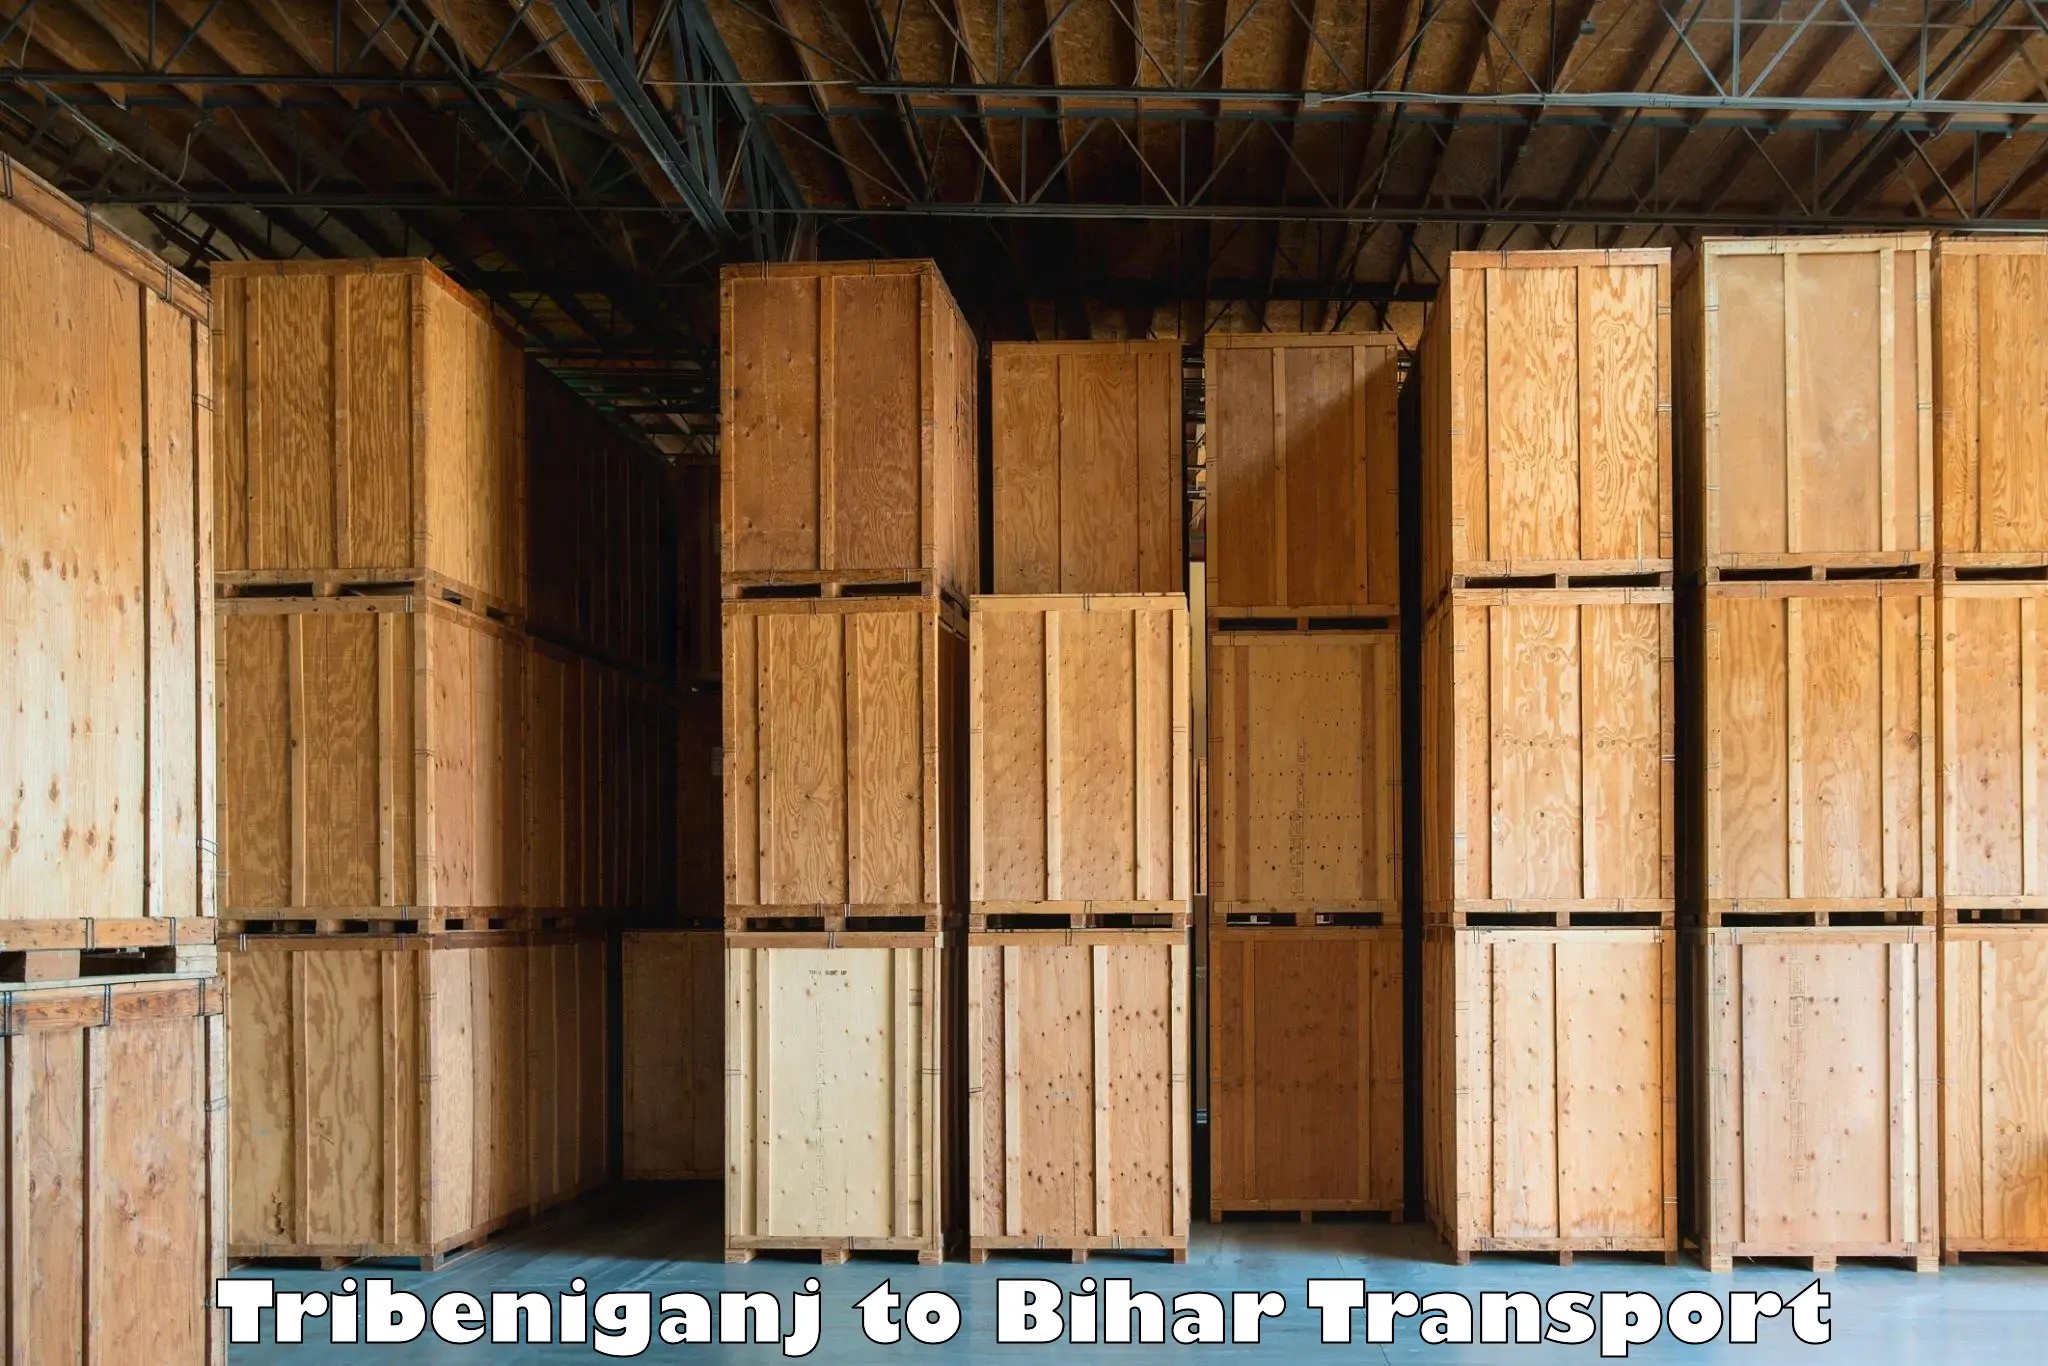 Container transport service Tribeniganj to Dehri